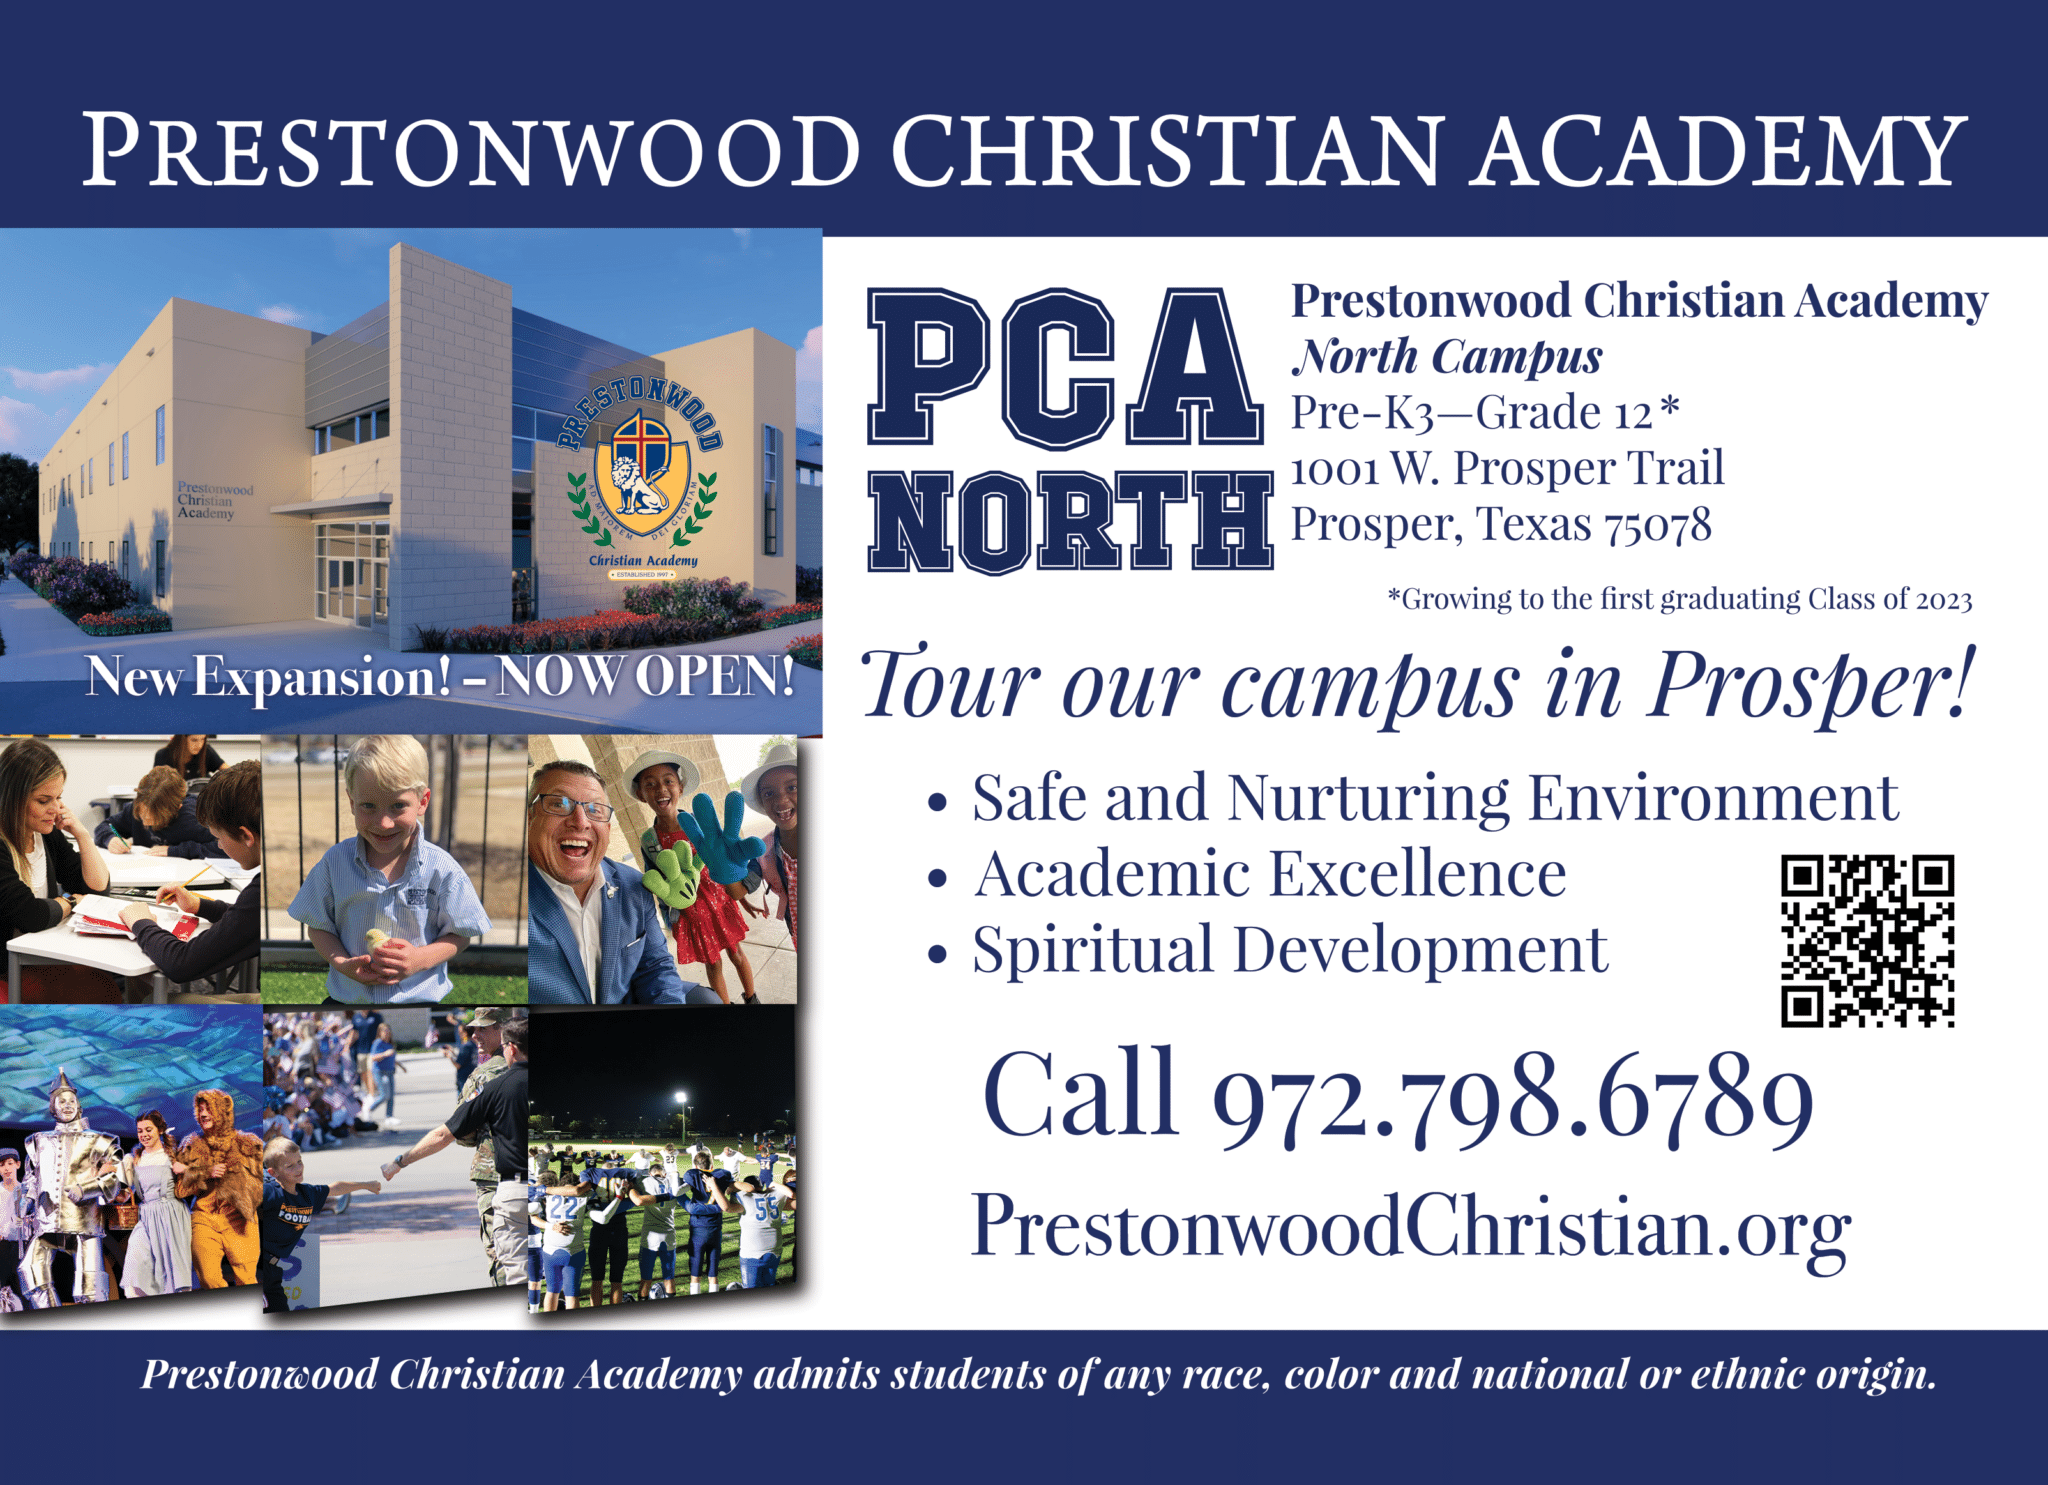 Prestonwood Christian Academy, North Campus in Prosper, TX PrestonwoodChristian.org